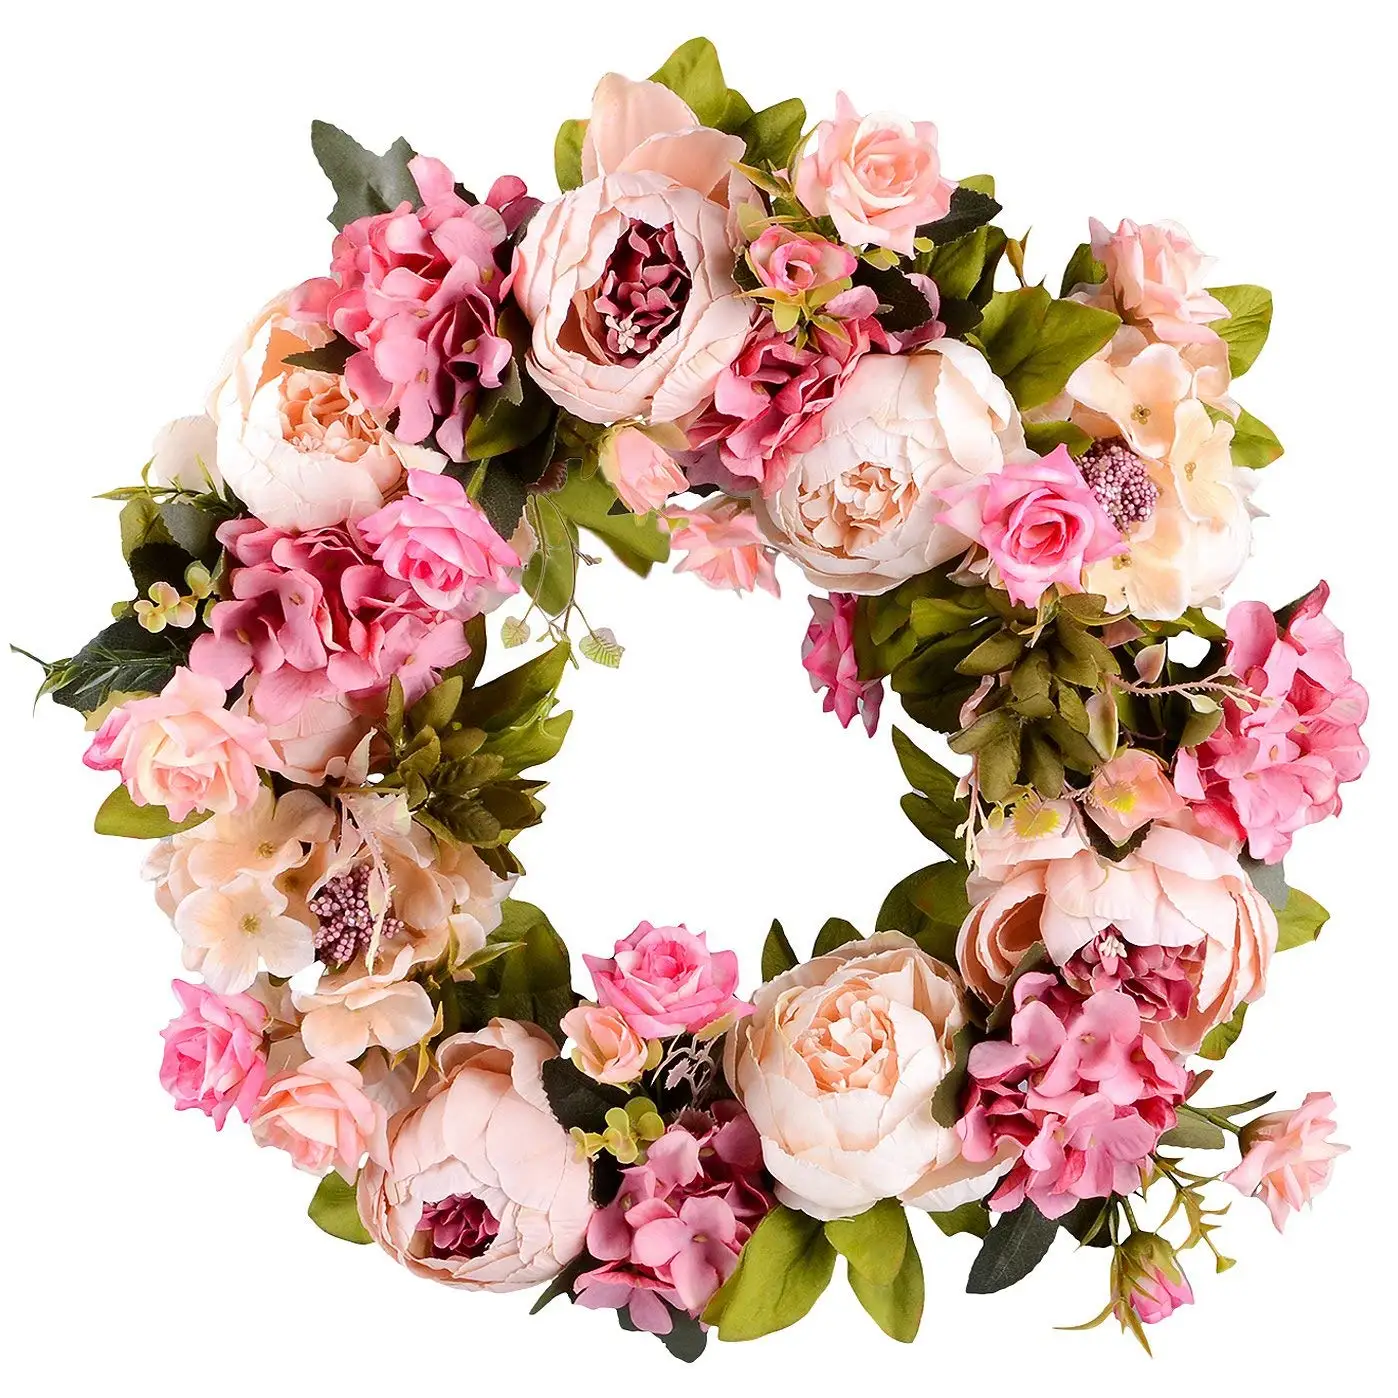 

Artificial Flower Wreath Peony - 16inch Door Spring Wreath Round For The Front Door, Wedding, Home Decor